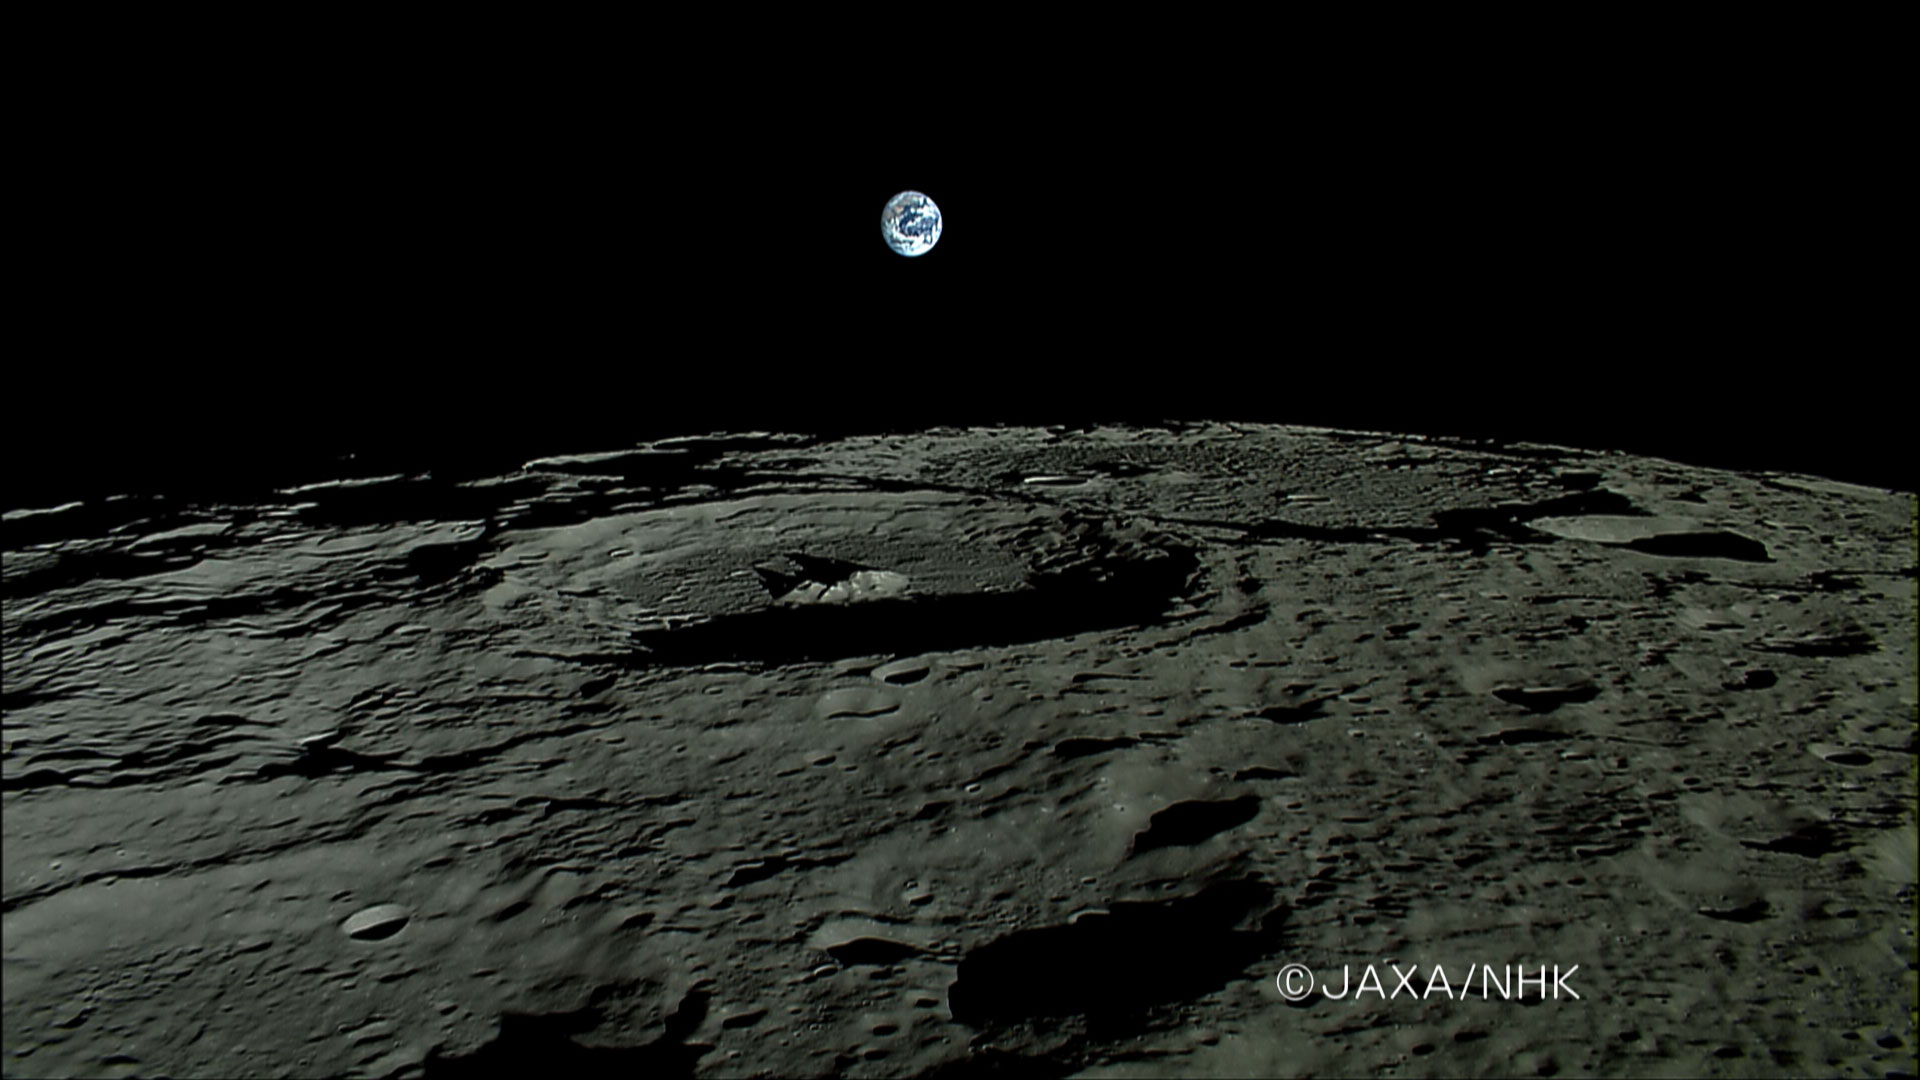 JAXAの月観測衛星かぐやが捉えた月から見た地球の出_d0063814_1133189.jpg